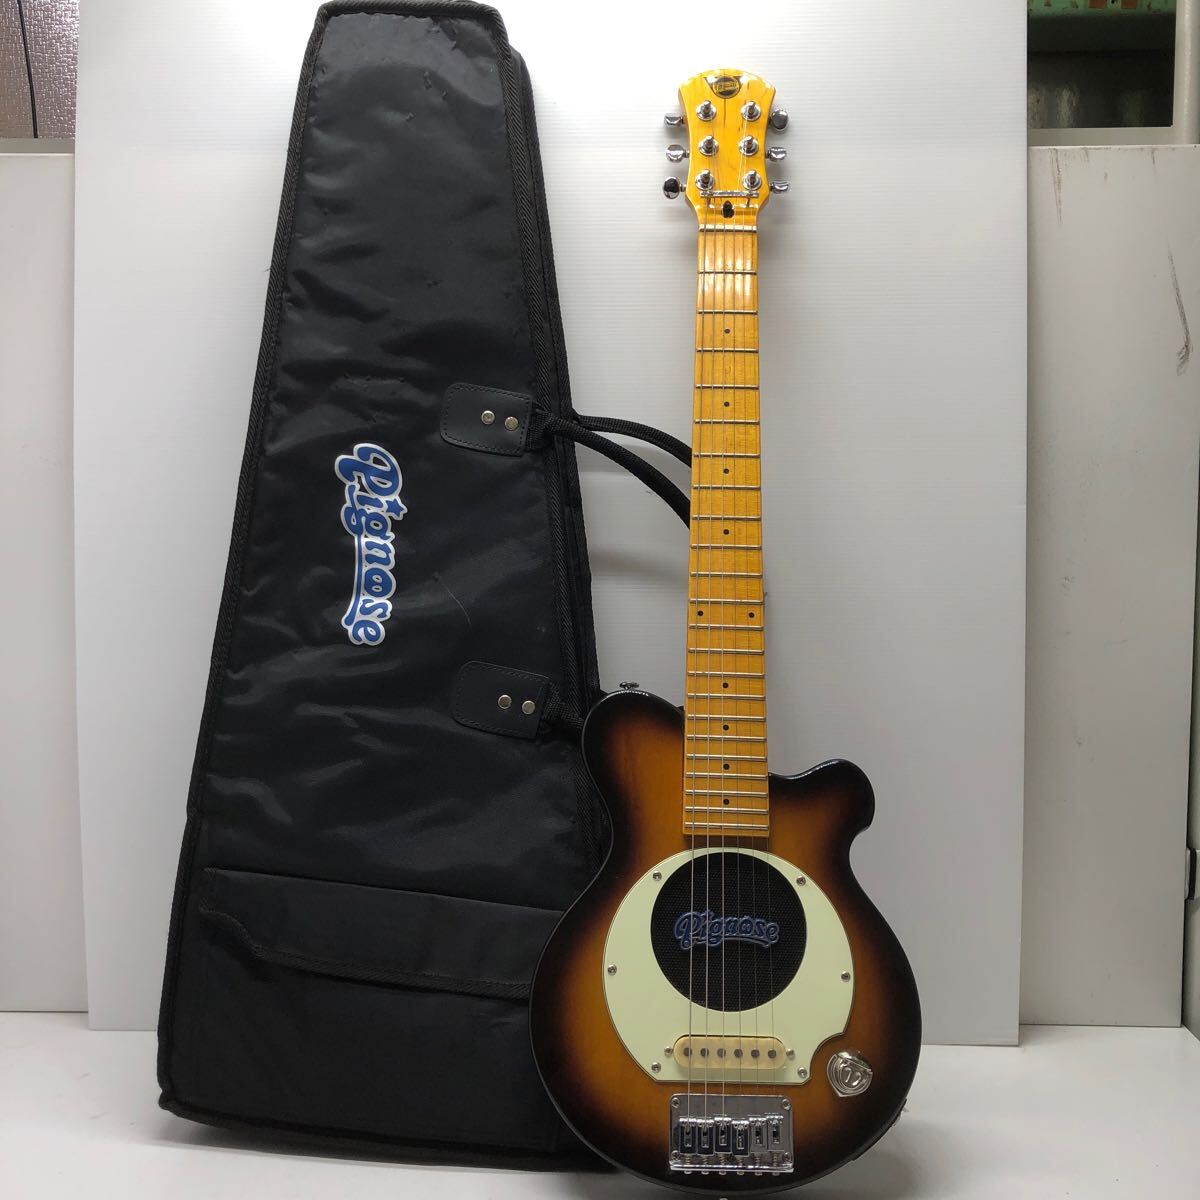 【現状品】Pignose ピグノーズ スピーカー内蔵エレキギター ミニギター ケースあり 03081504_画像1